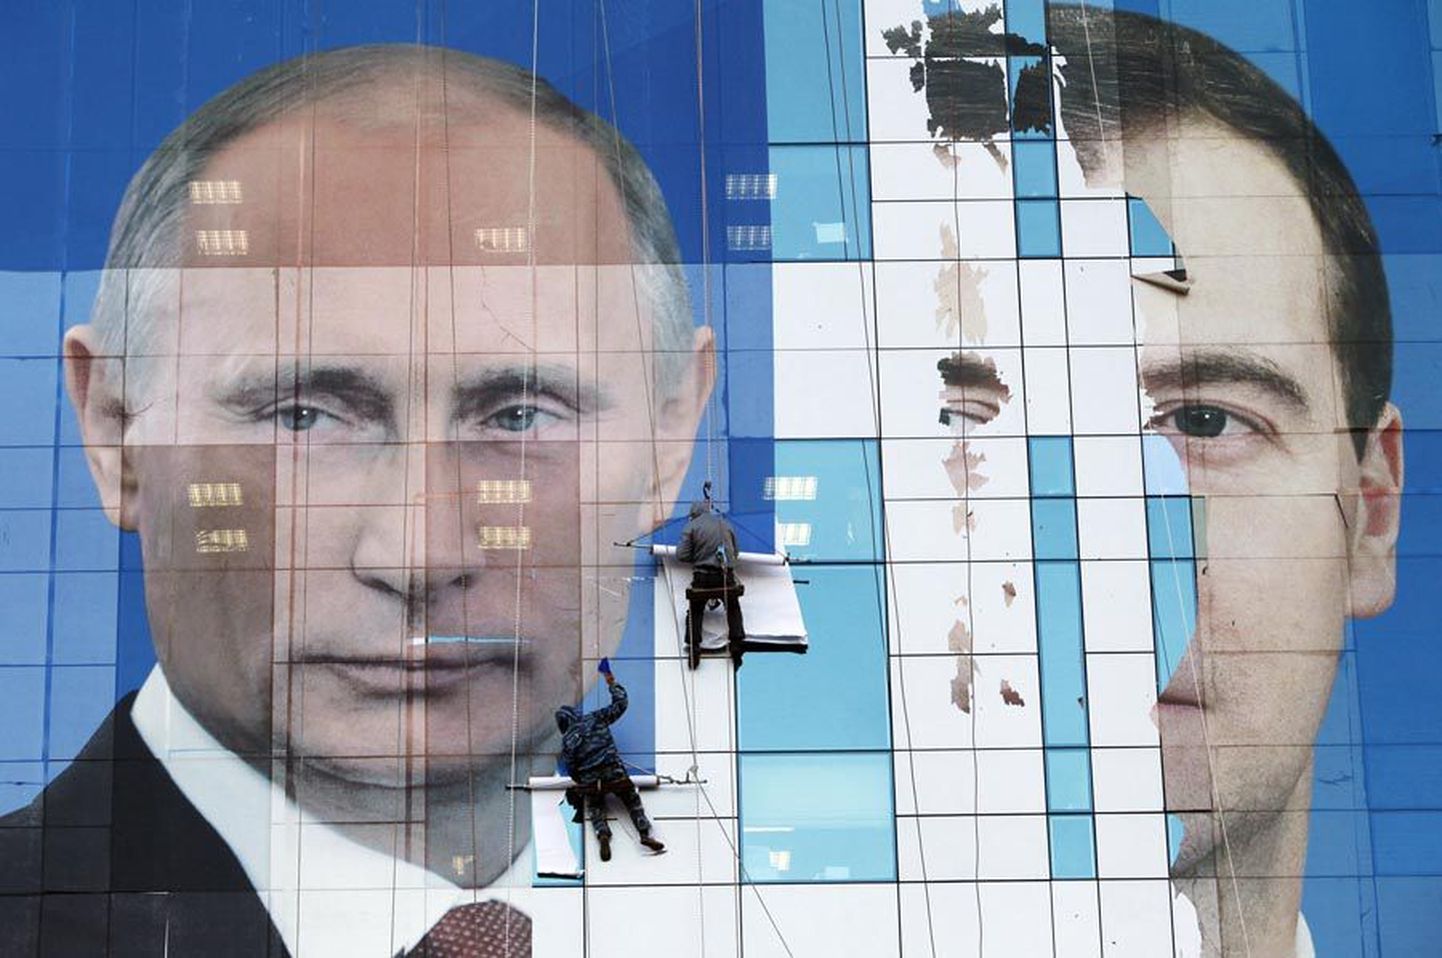 Õigupoolest oli Vladimir Putini järgmiseks presidendiks saamine otsustatud juba enne valimisi. Pildil on näha töömehi mullu sügisel Krasnodaris hiigelsuurt plakatit paigaldamas.